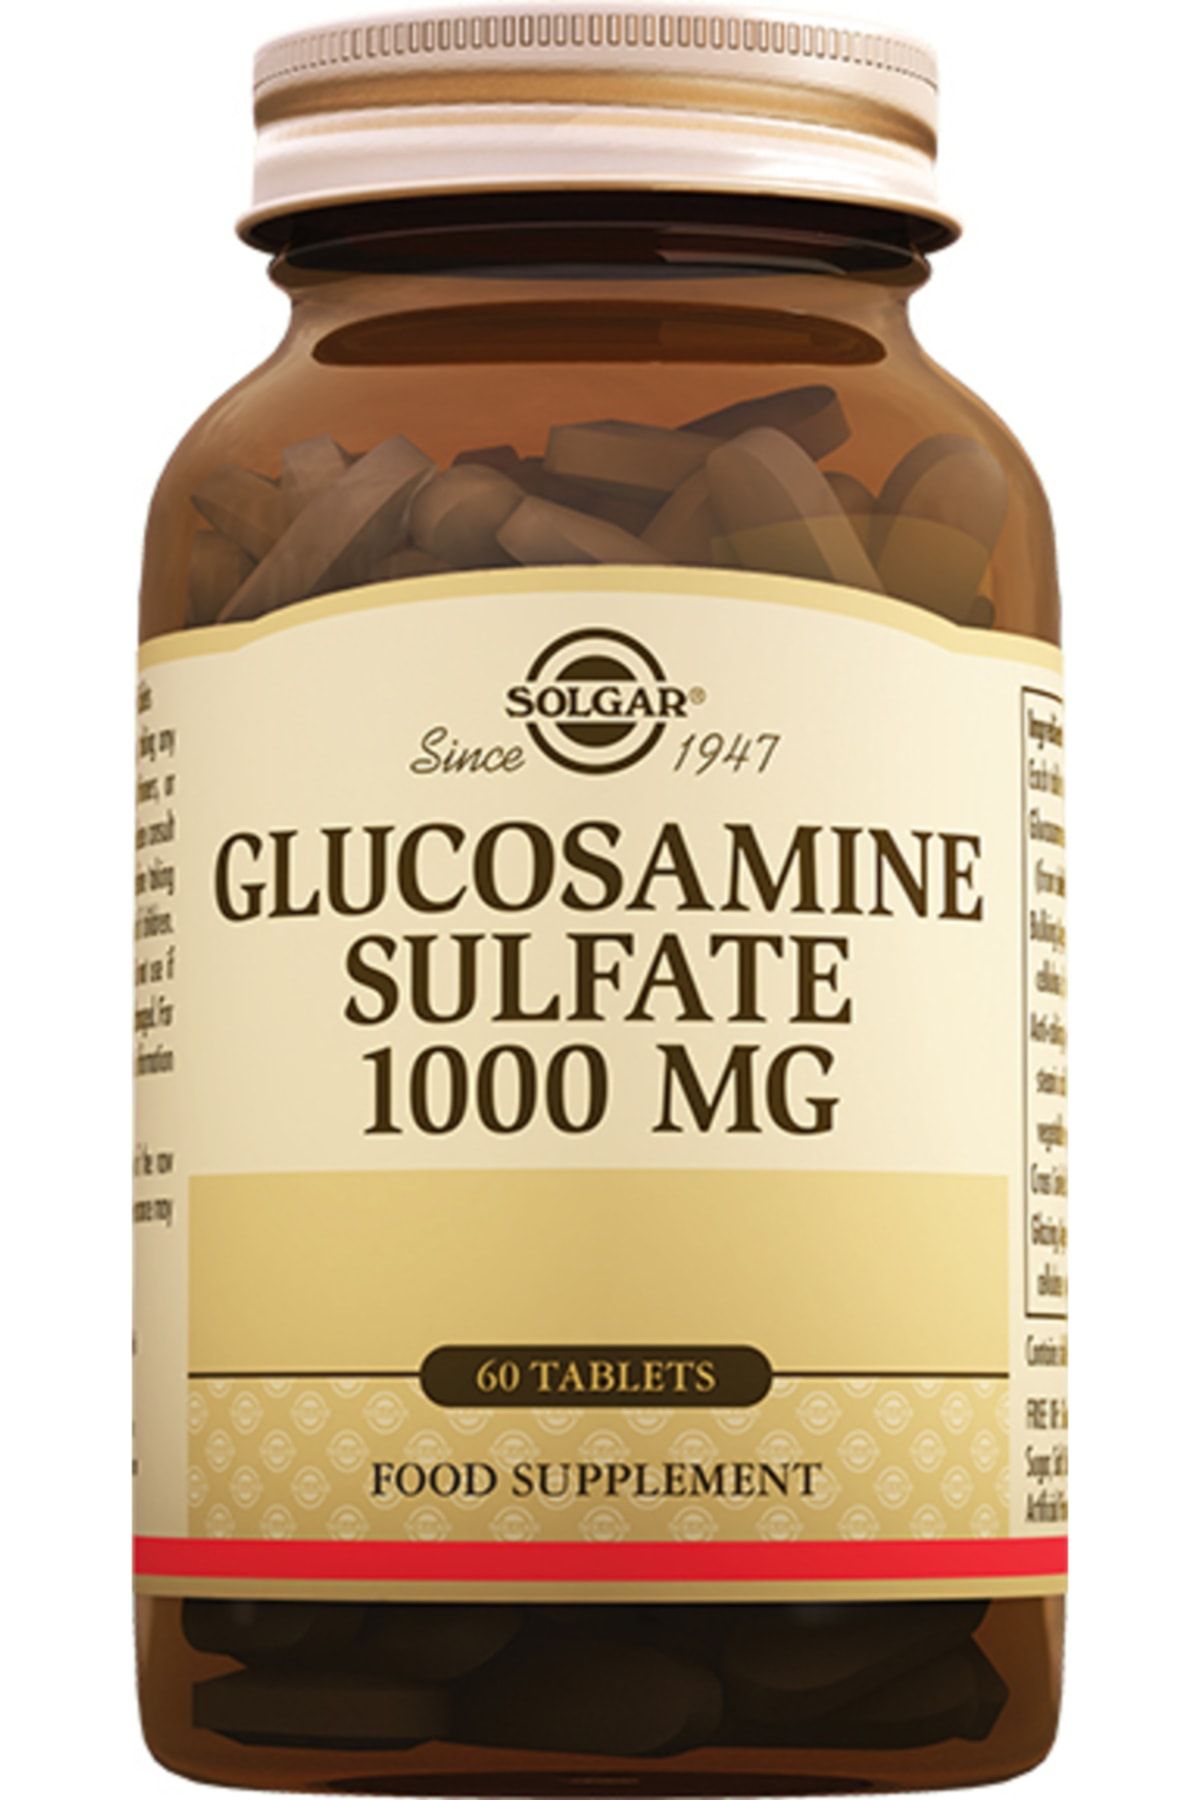 Solgar Glucosamine Sulfate (glukozamin Glukosamin Sülfat) 1000 Mg 60 Tablet Skt:02-2024